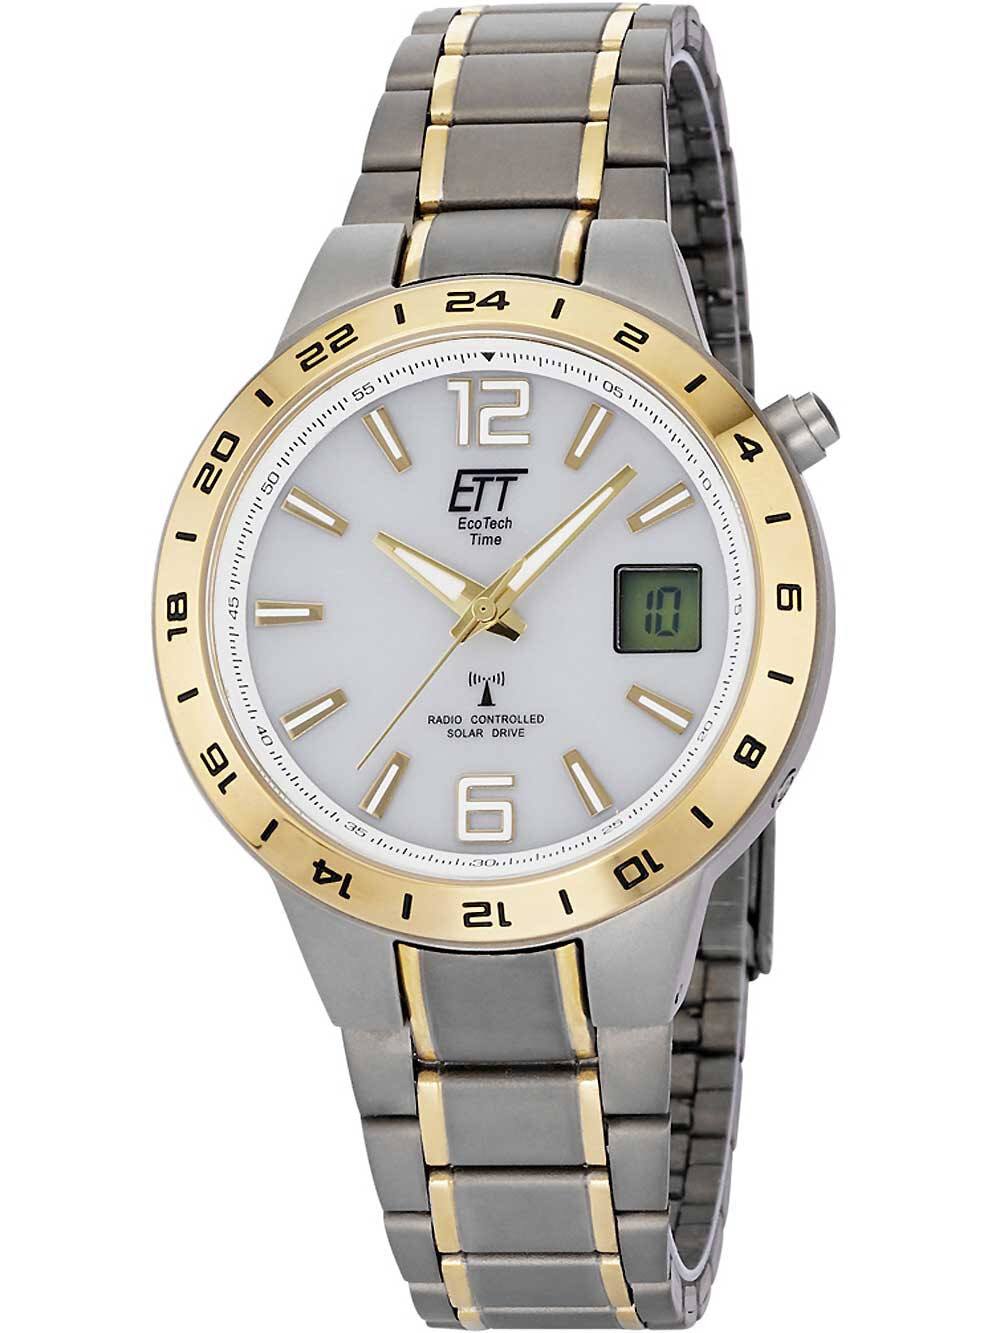 Мужские наручные часы с серебряным браслетом ETT EGT-11410-40M mens solar titanium radio controlled watch 40mm 5ATM